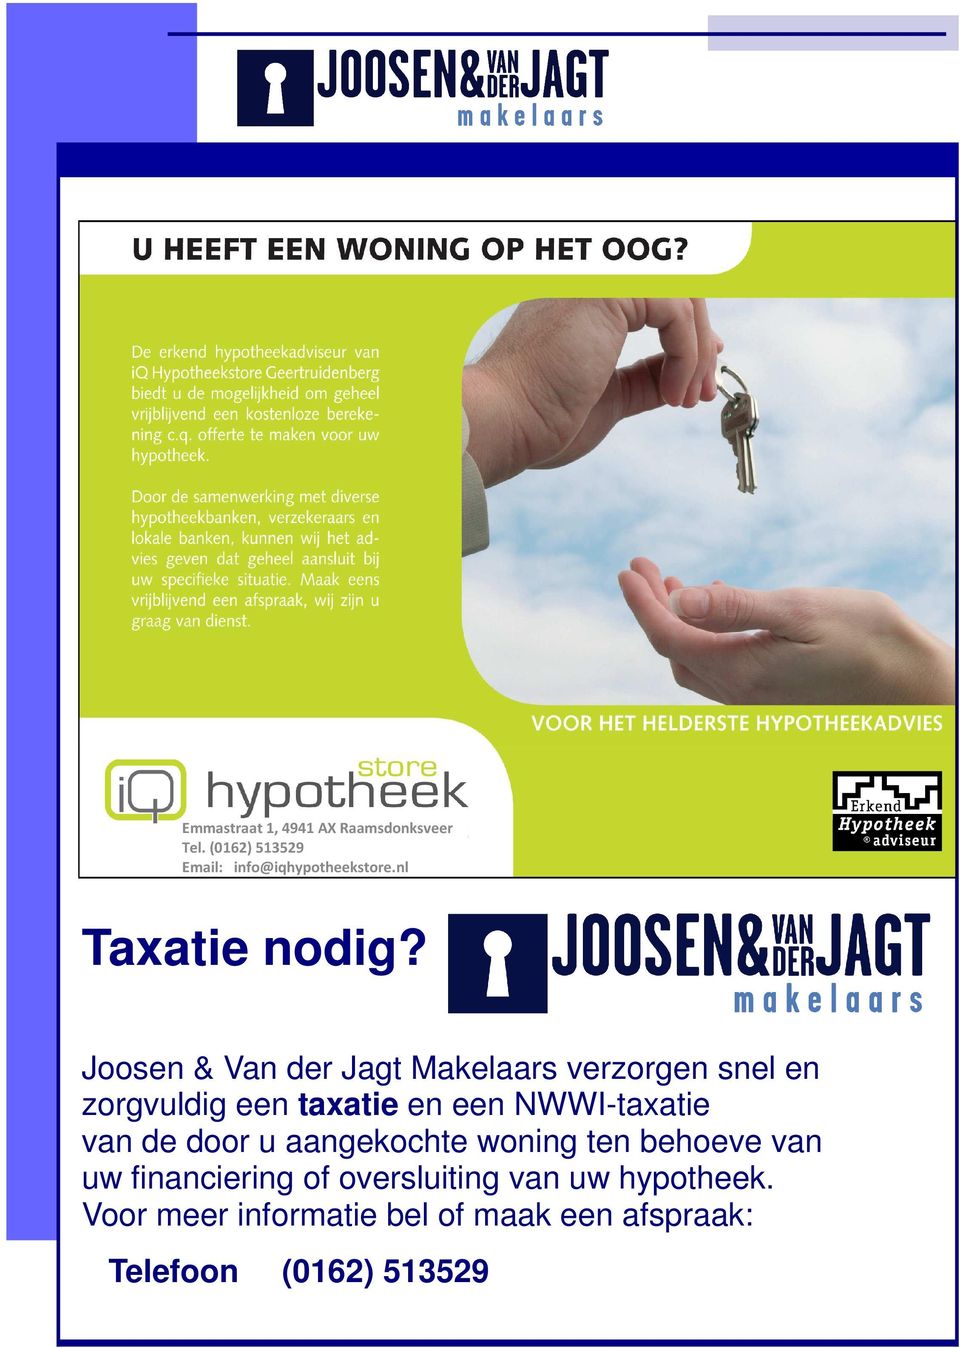 Joosen & Van der Jagt Makelaars verzorgen snel en zorgvuldig een taxatie en een